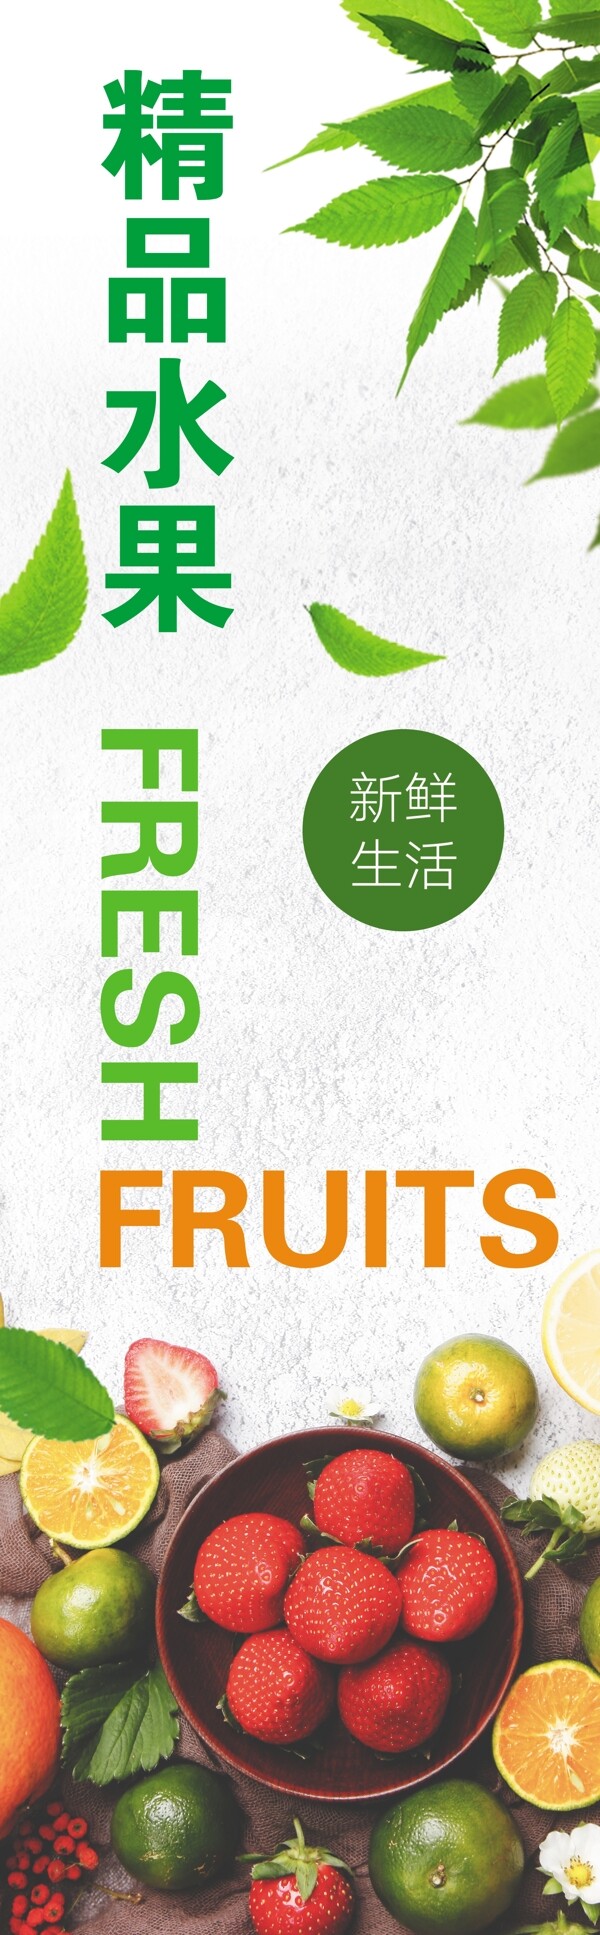 超市广告新鲜水果水果竖幅